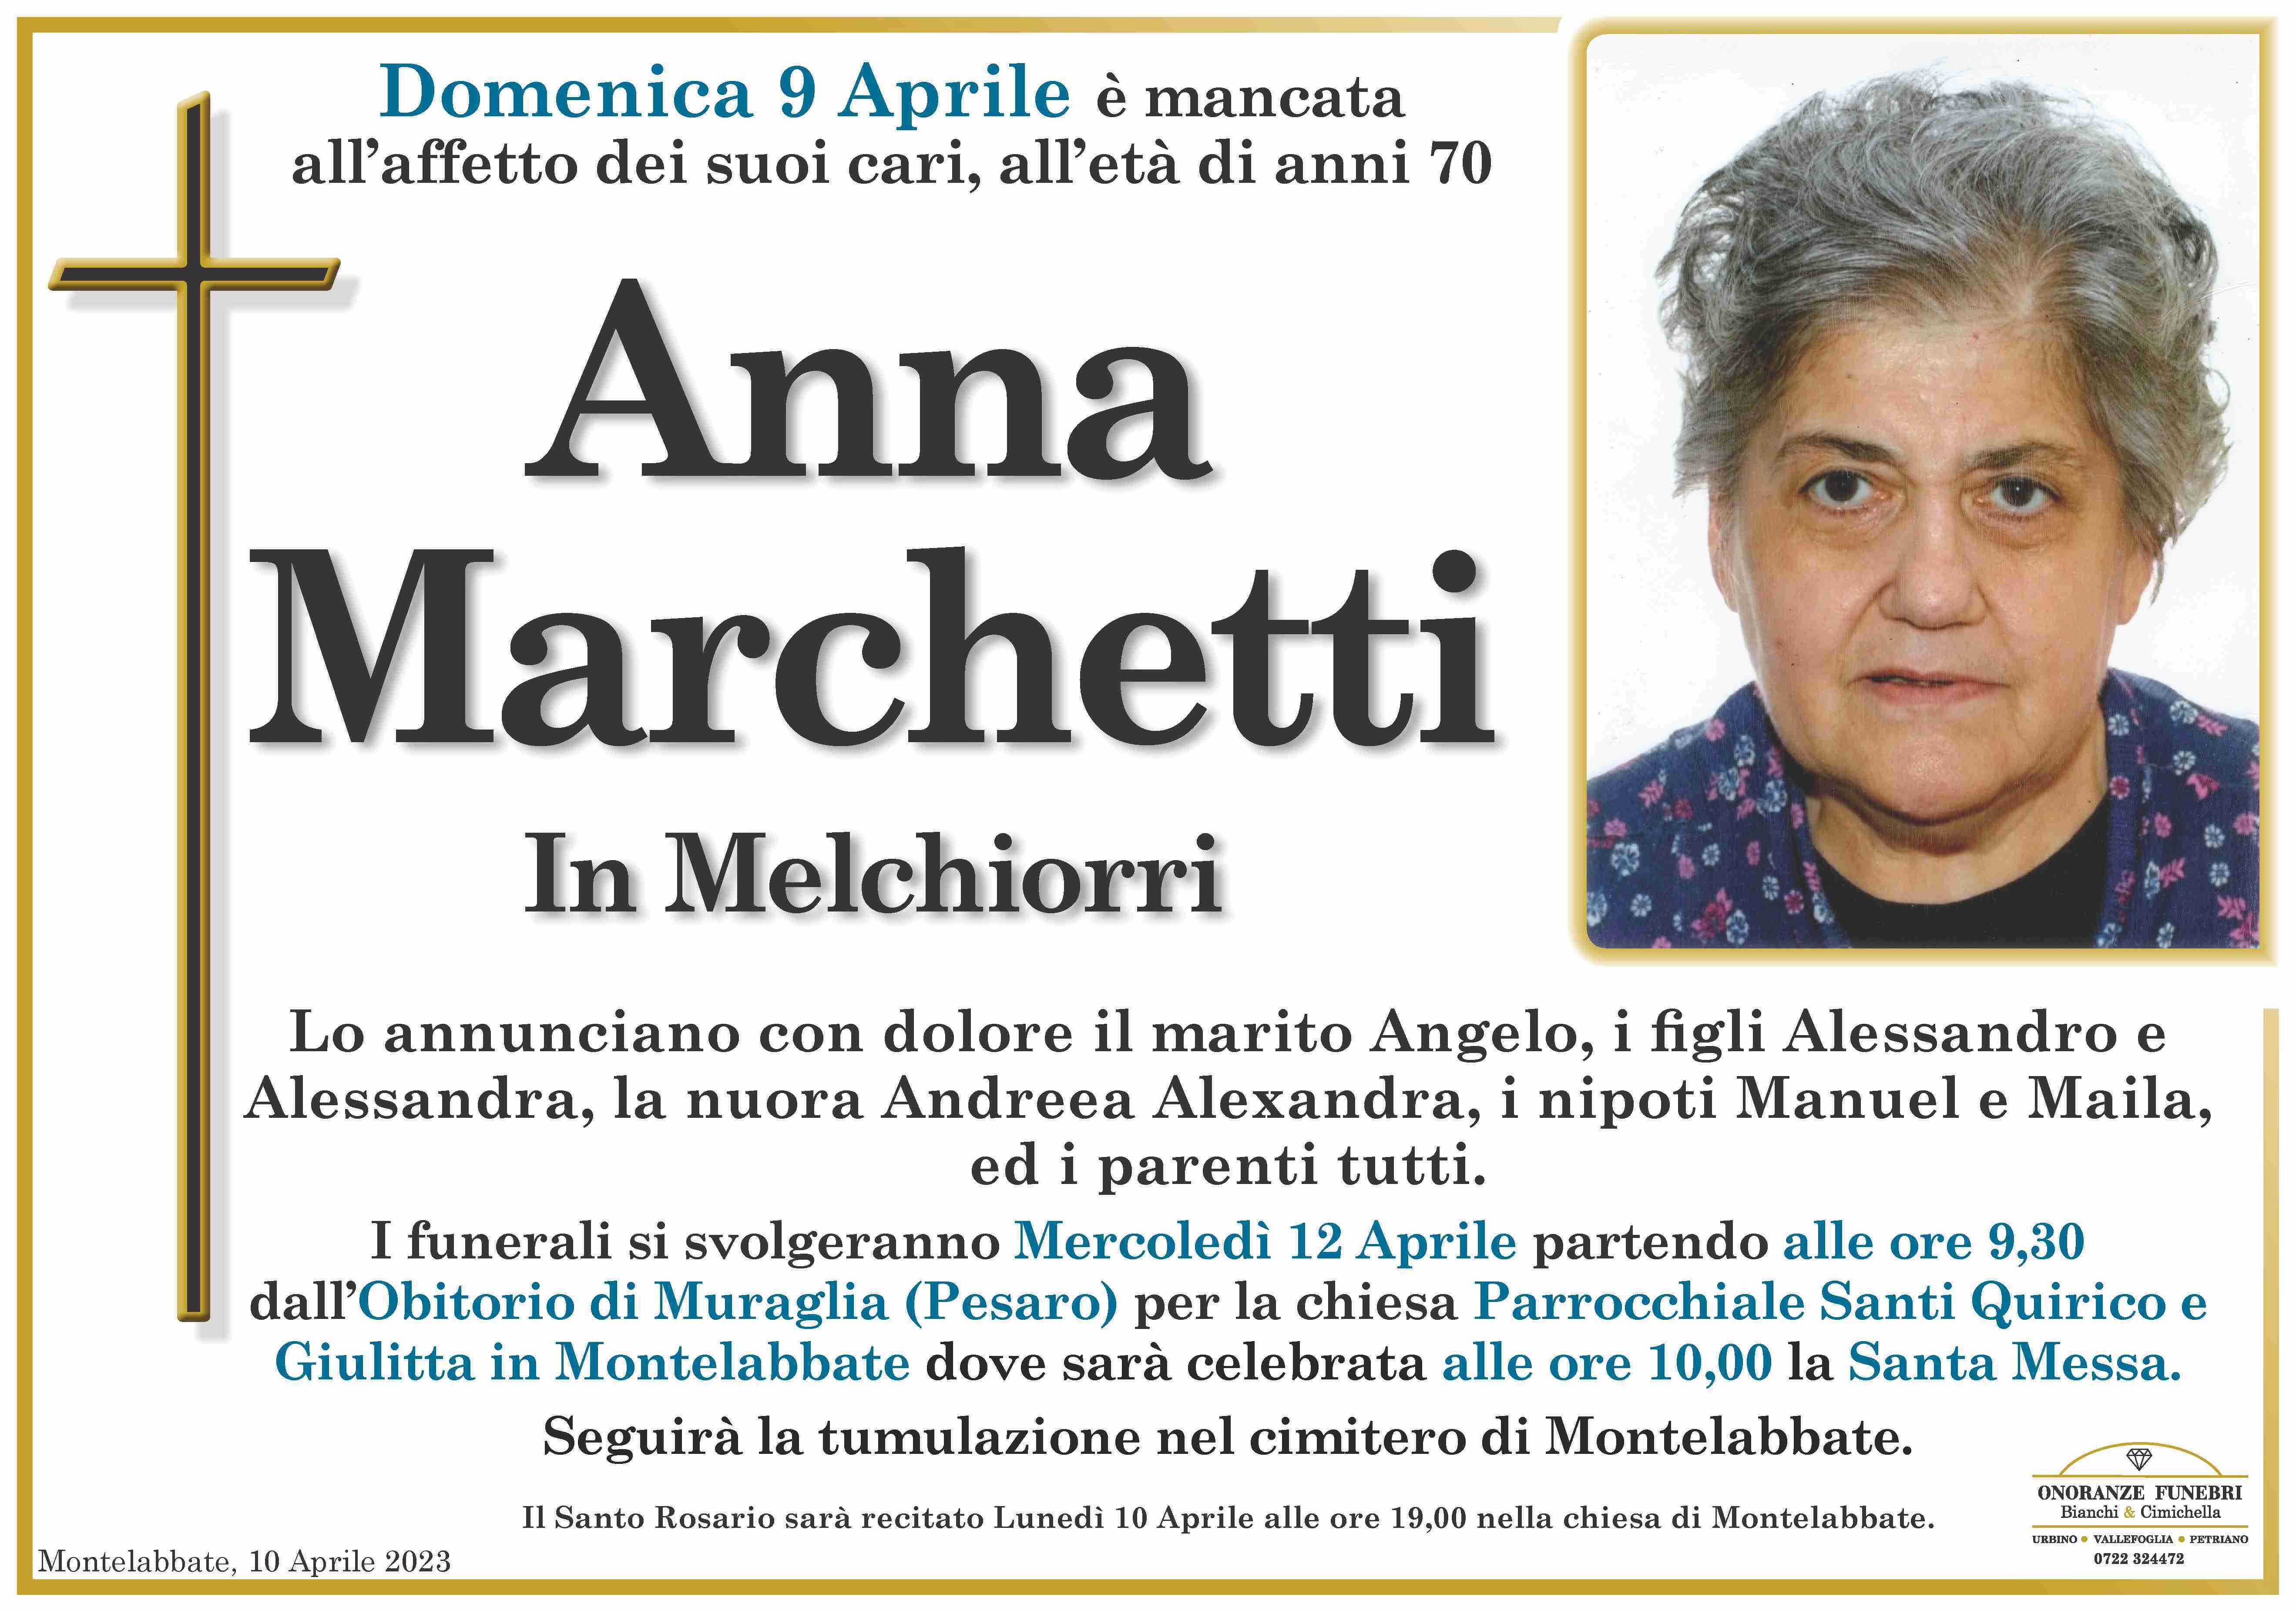 Anna Marchetti